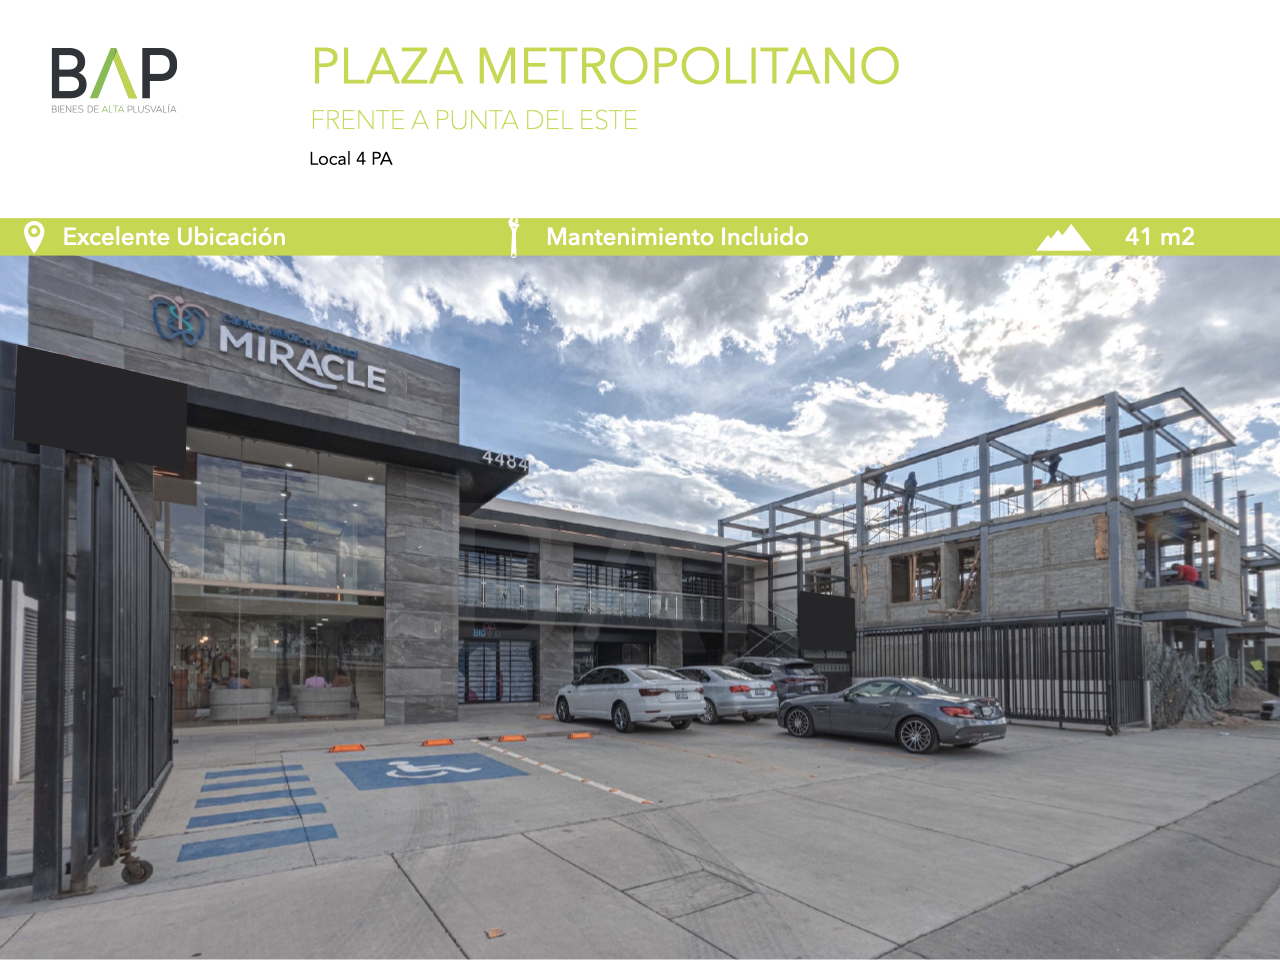 Local Plaza Metropolitano &#8211; 5 PA